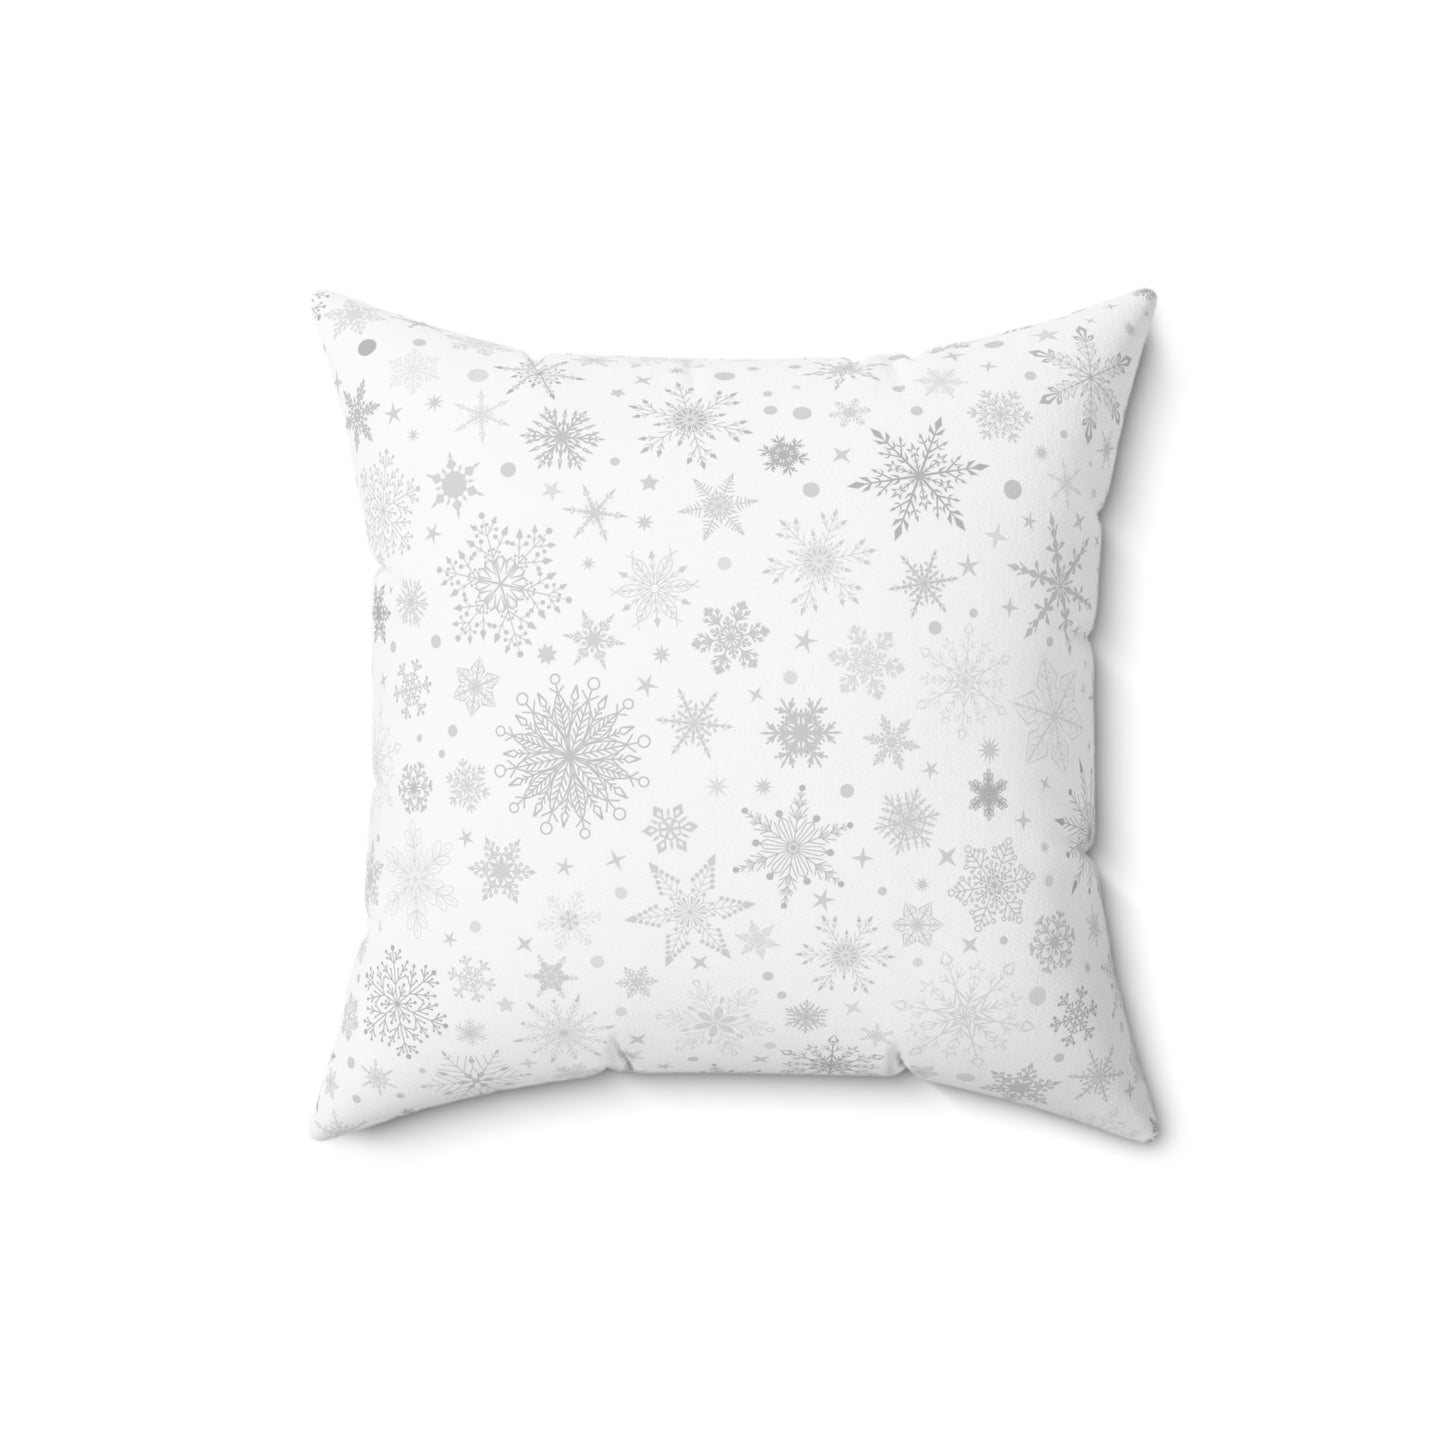 Winter White Snowflake Pillow